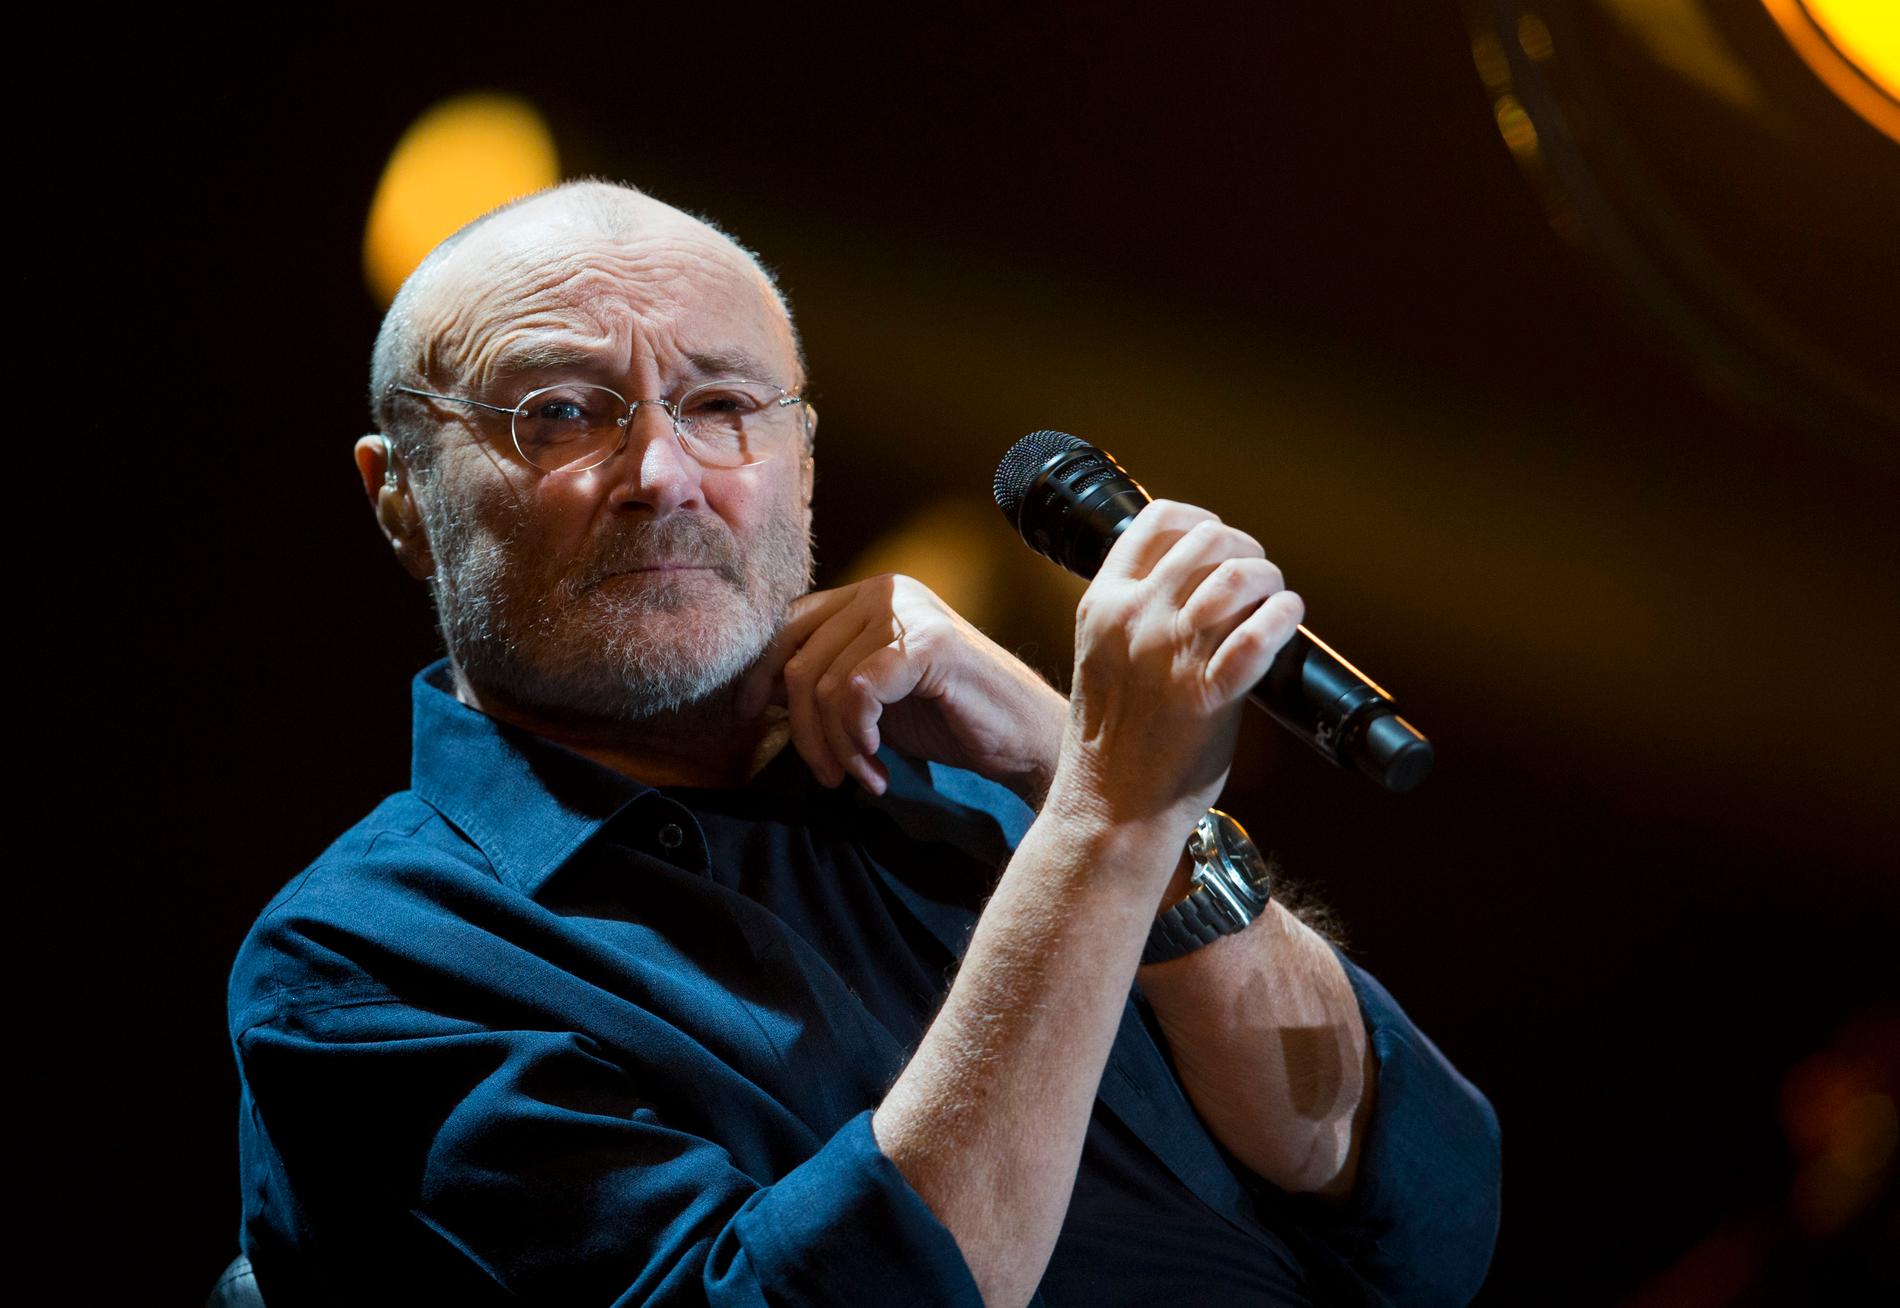 Den brittiska artisten Phil Collins låt "In the air tonight" från 1981 har ökat i popularitet den senaste veckan tack vare en viral video. Arkivbild.